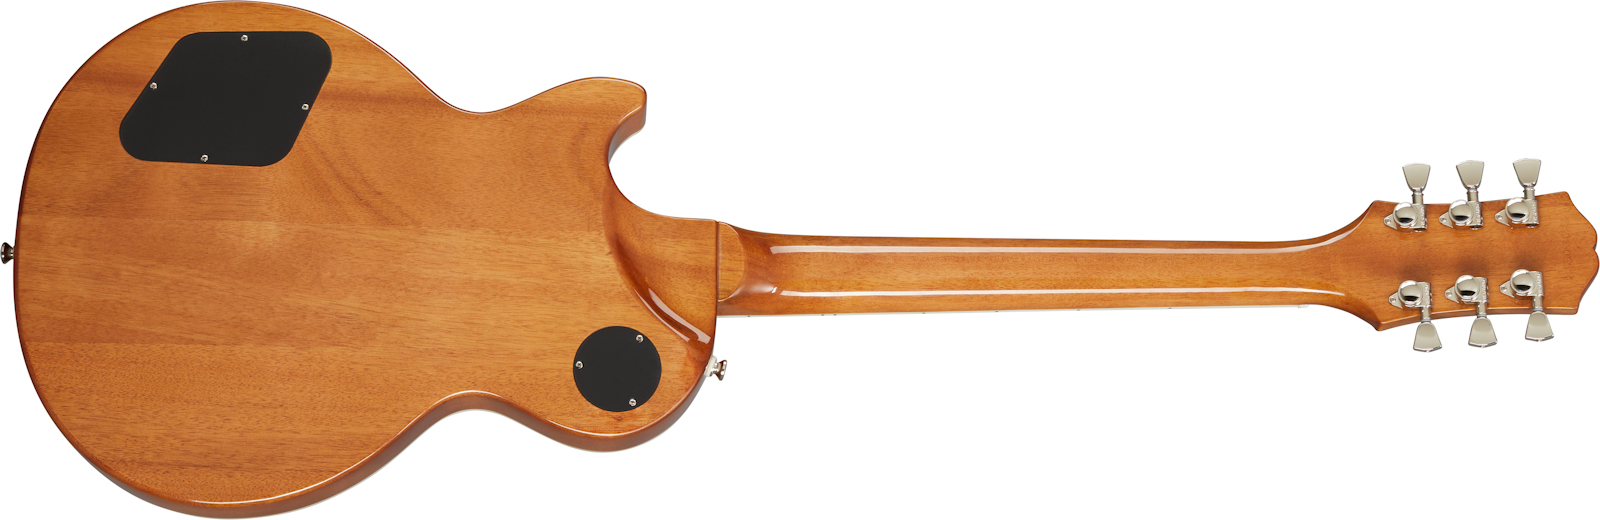 Epiphone Les Paul Modern Figured 2h Ht Eb - Magma Orange Fade - Guitarra eléctrica de corte único. - Variation 1